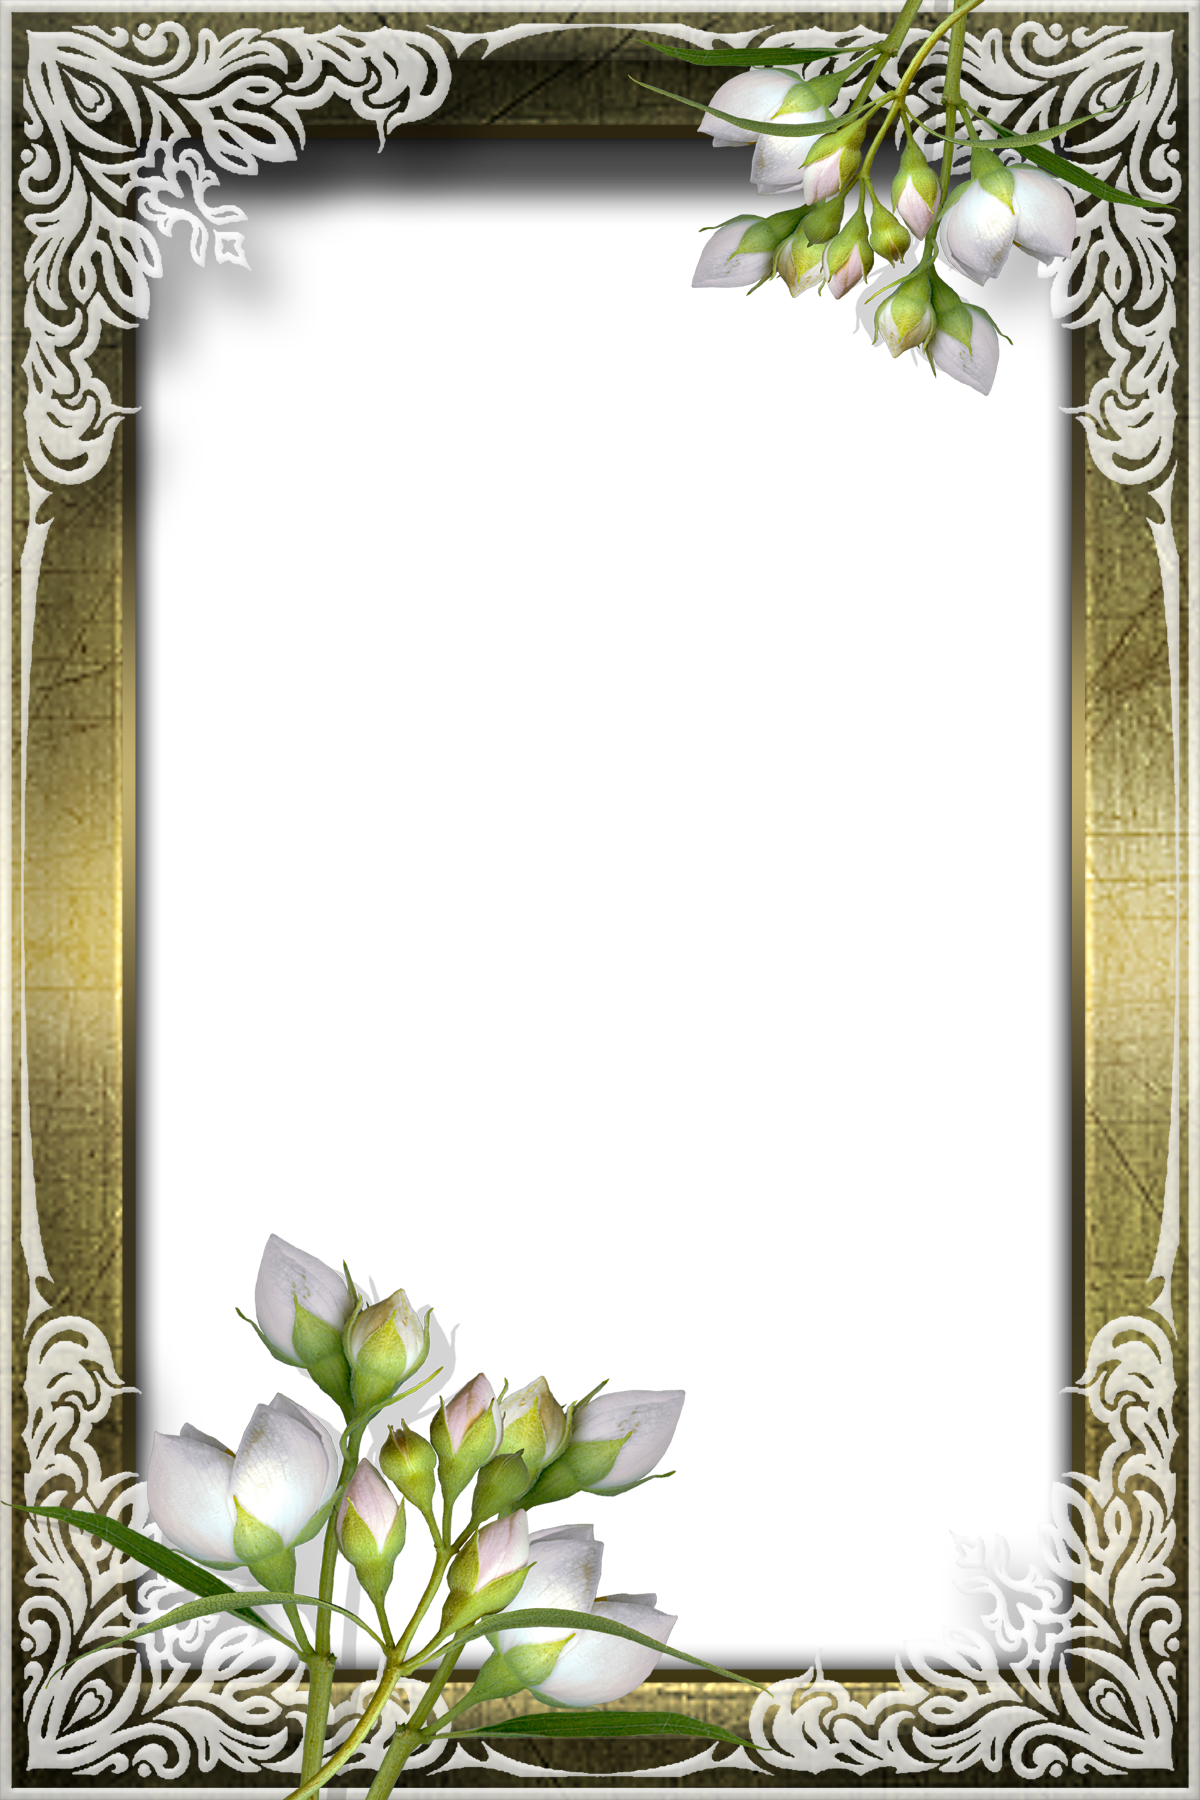 白い花の写真 フリー素材 No 606 薄紫 つぼみ 木枠